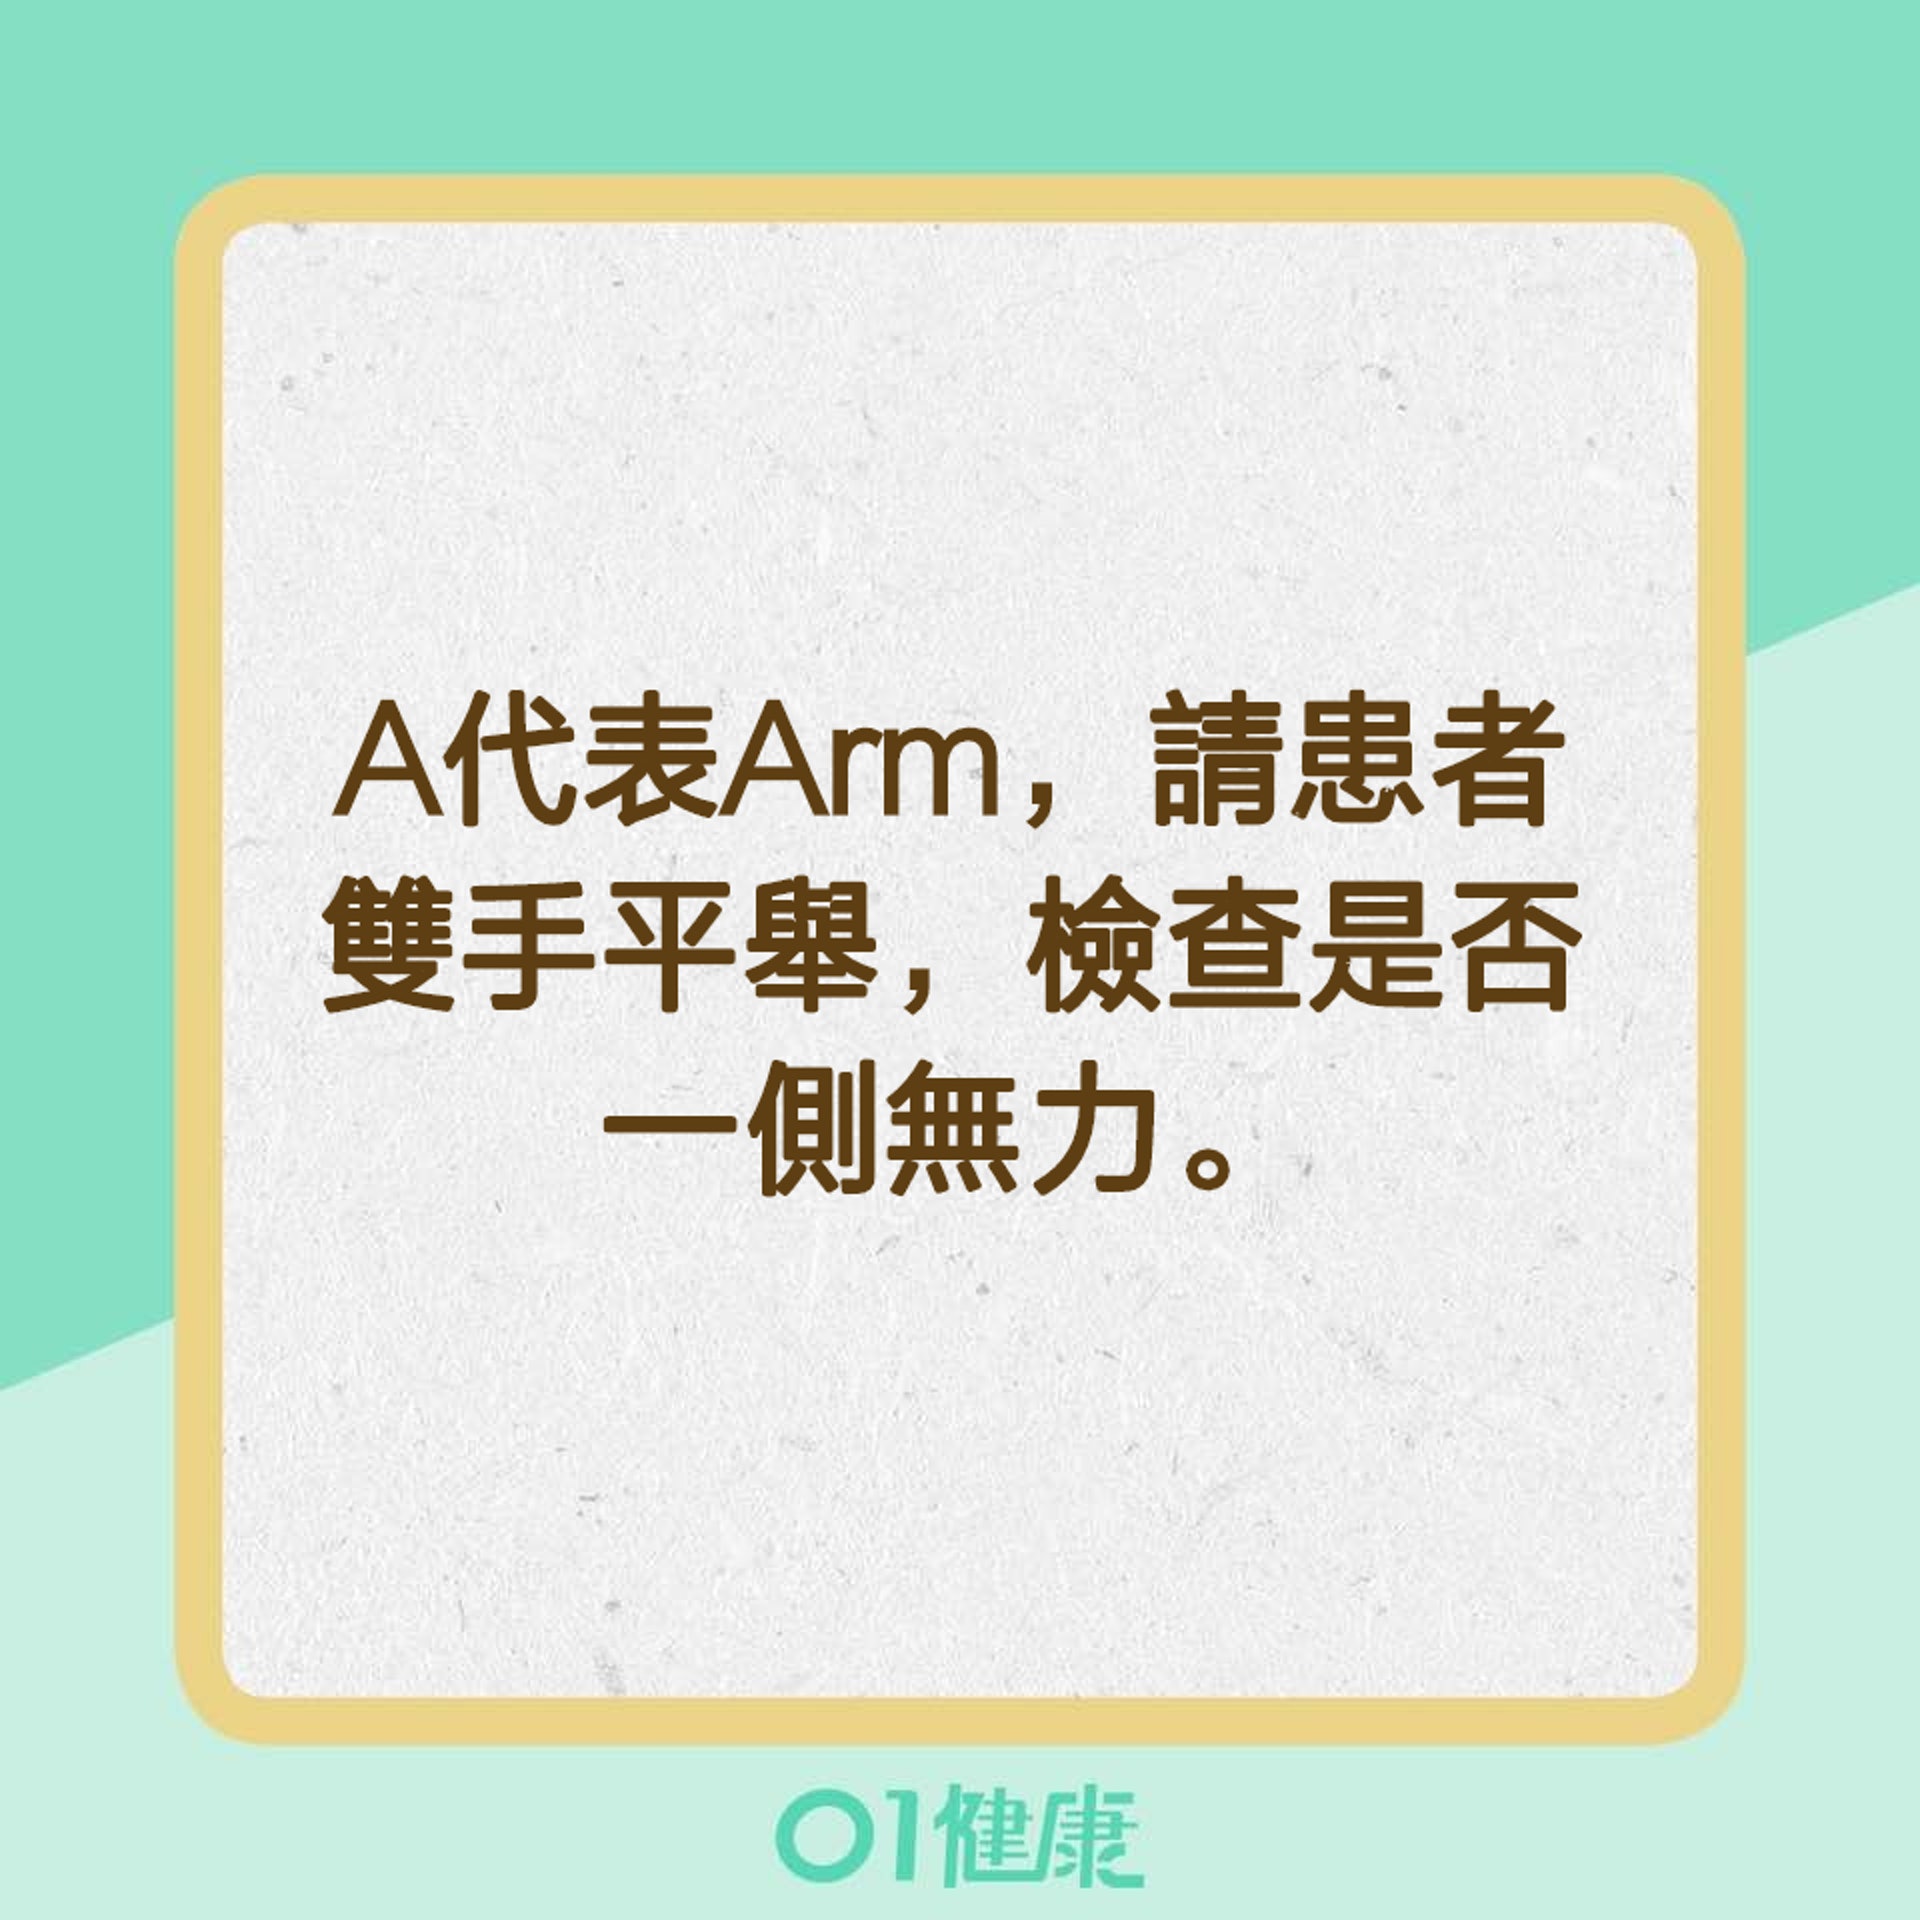  【辨別中風特徵的口訣「FAST」】A代表Arm（01製圖）